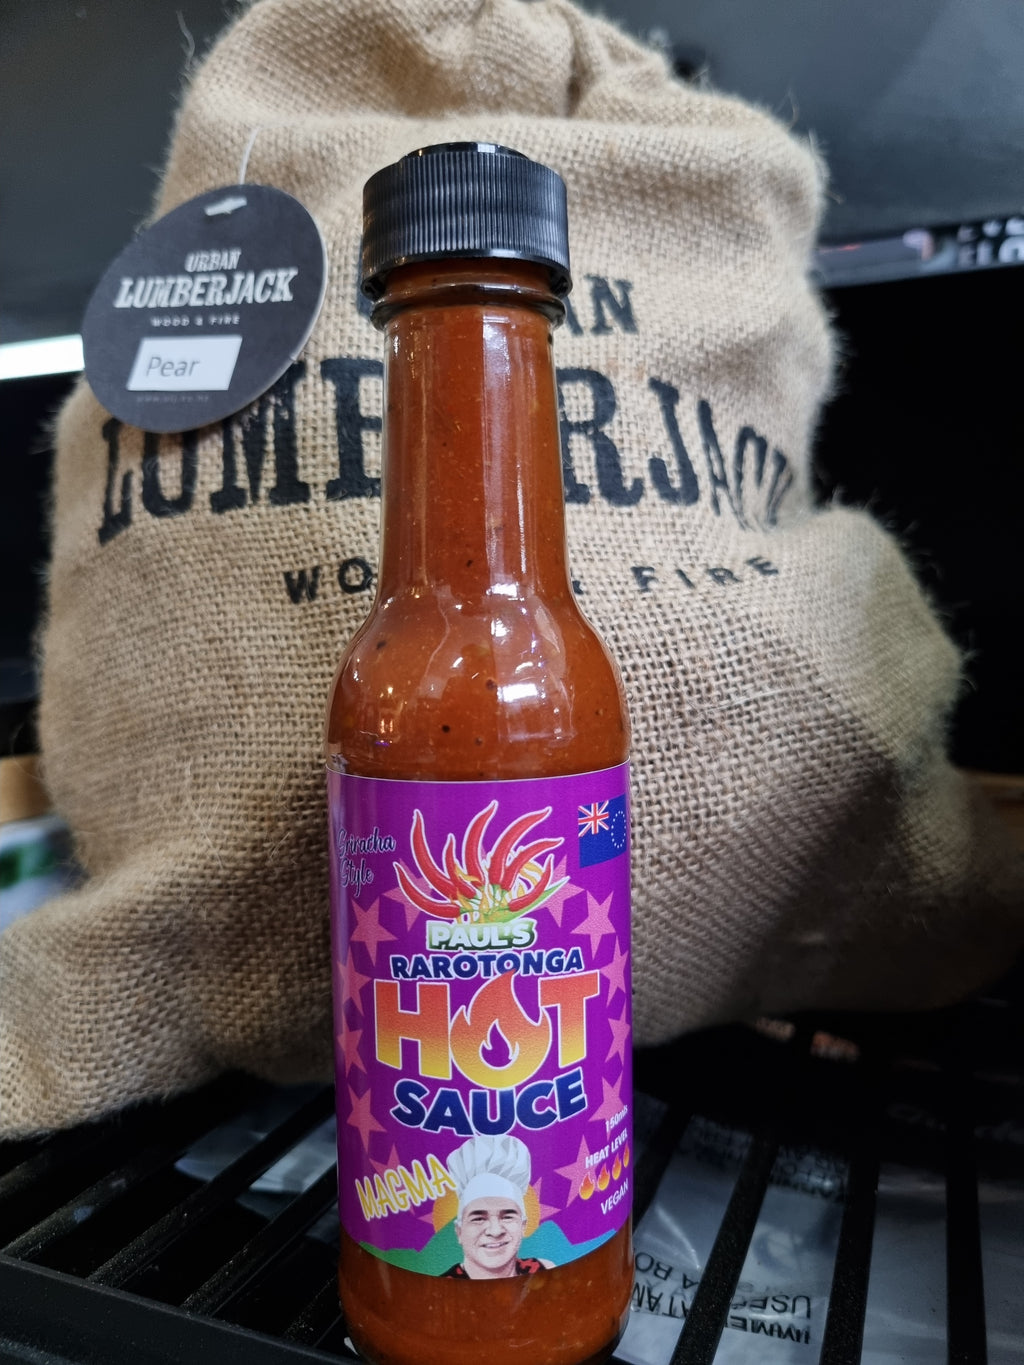 Paul's Rarotonga Hot Sauce "Magma" 150ml